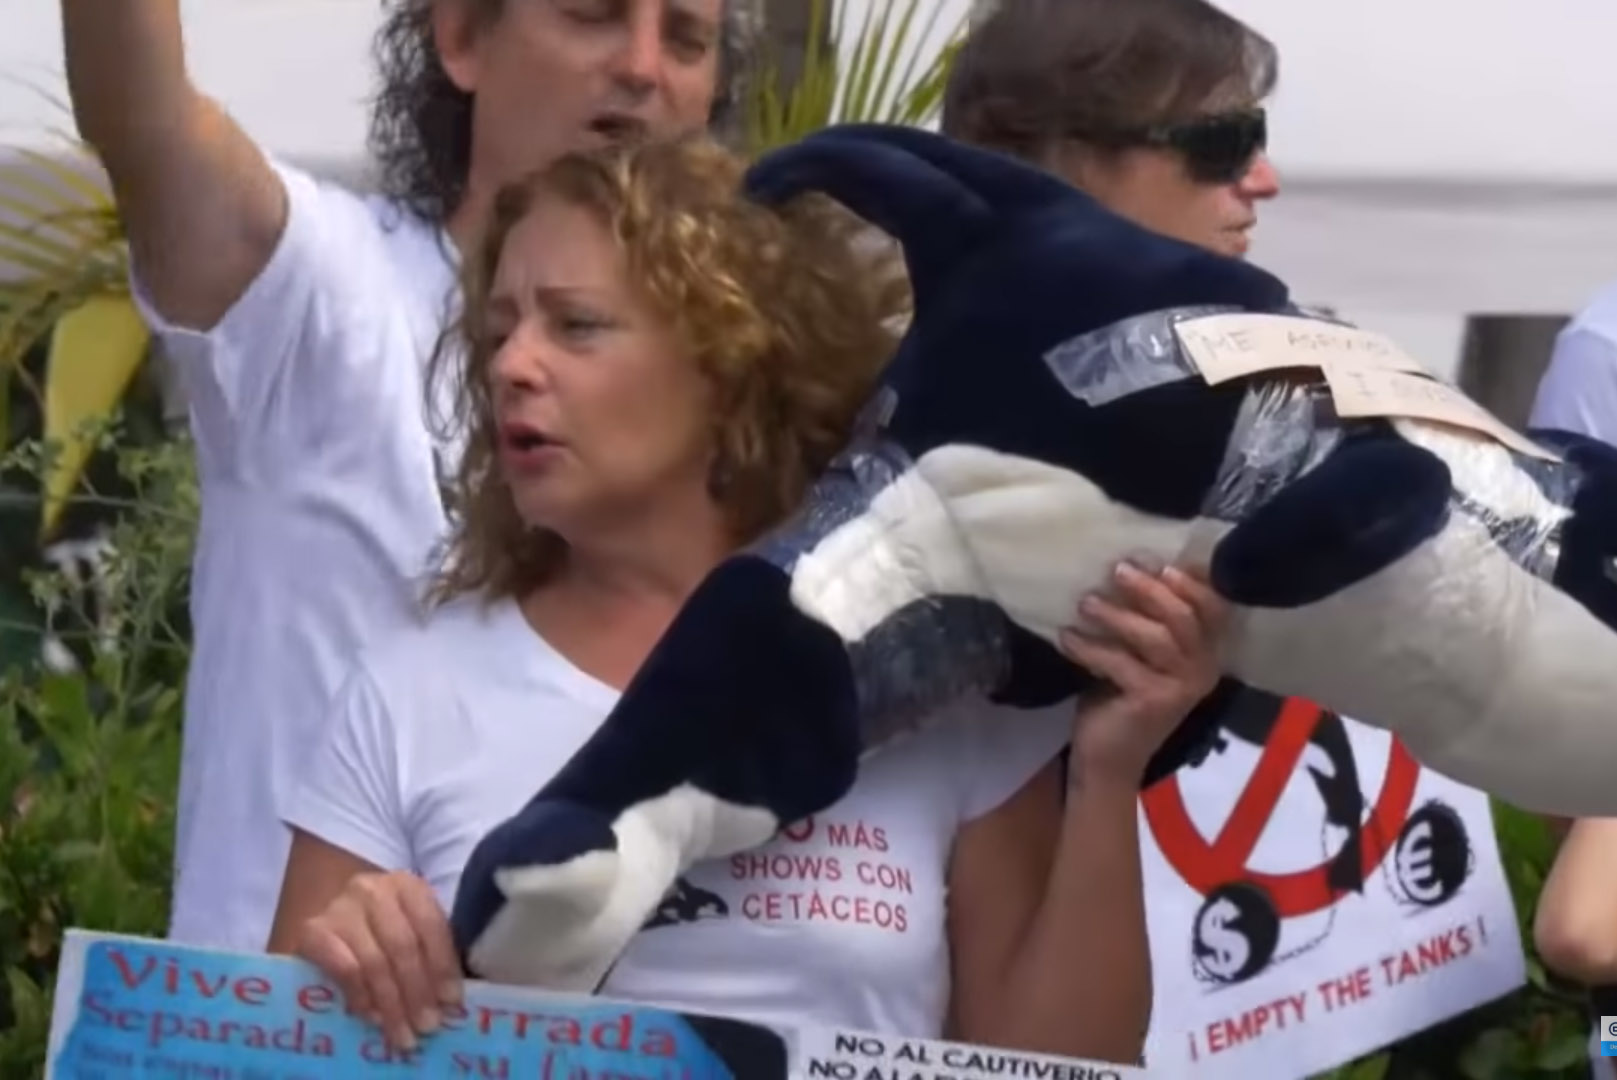 Video: Mutter von totem Loro-Parque-Trainer kämpft für Orcas